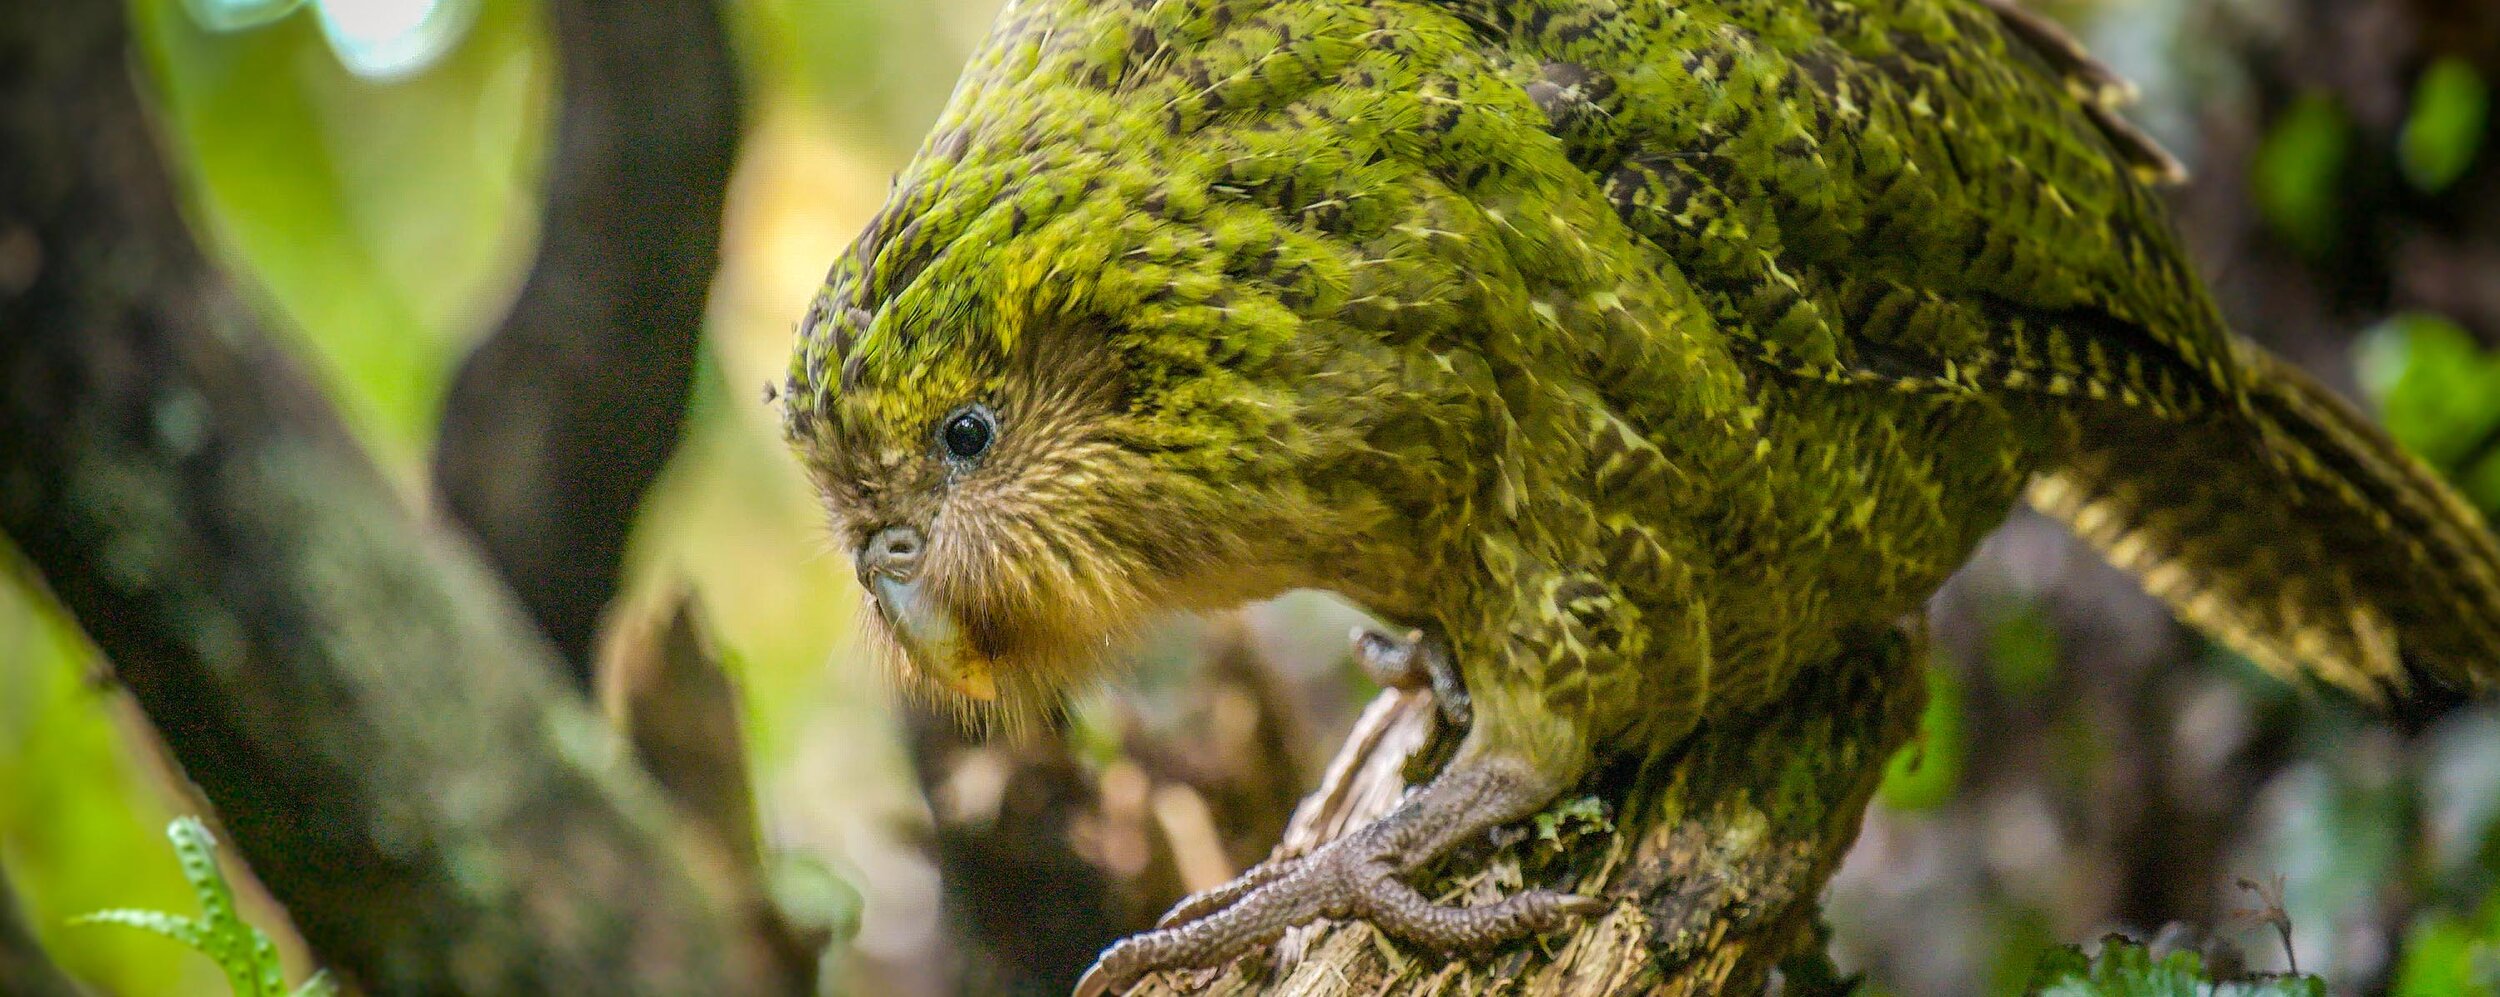 DSC01565-Pano_kakapo.jpg